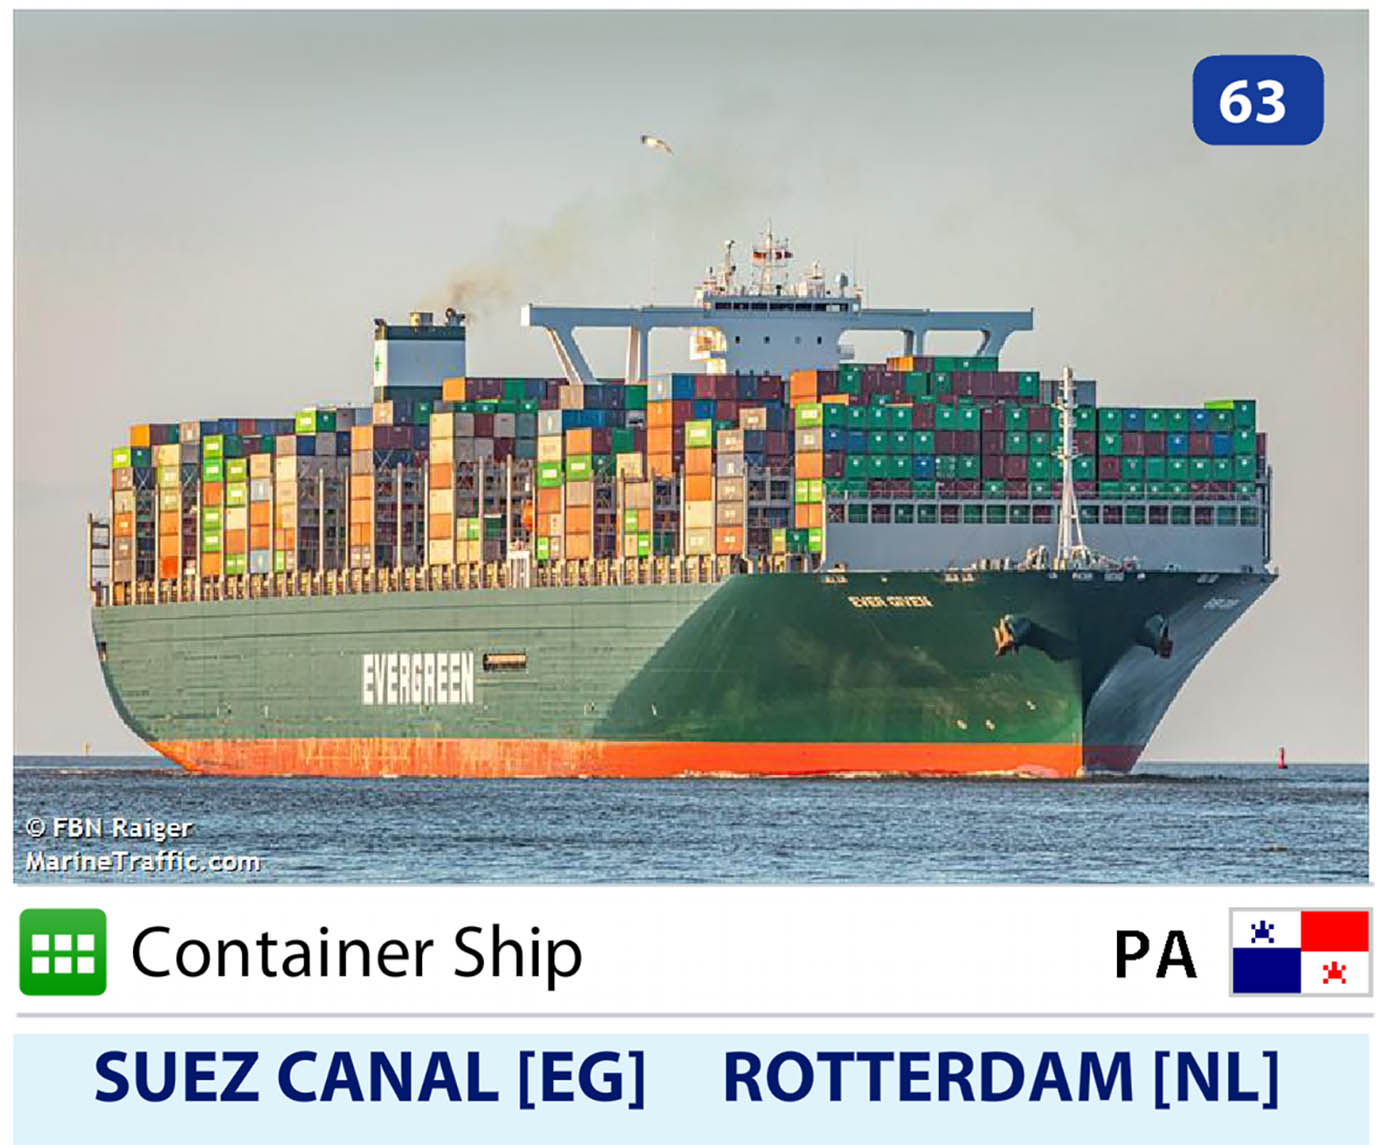 【緊急事態発生】超巨大コンテナ船「EVER GREEN」がスエズ運河を塞ぐ / 詳細が判明「オランダ行きのエバーギブン」